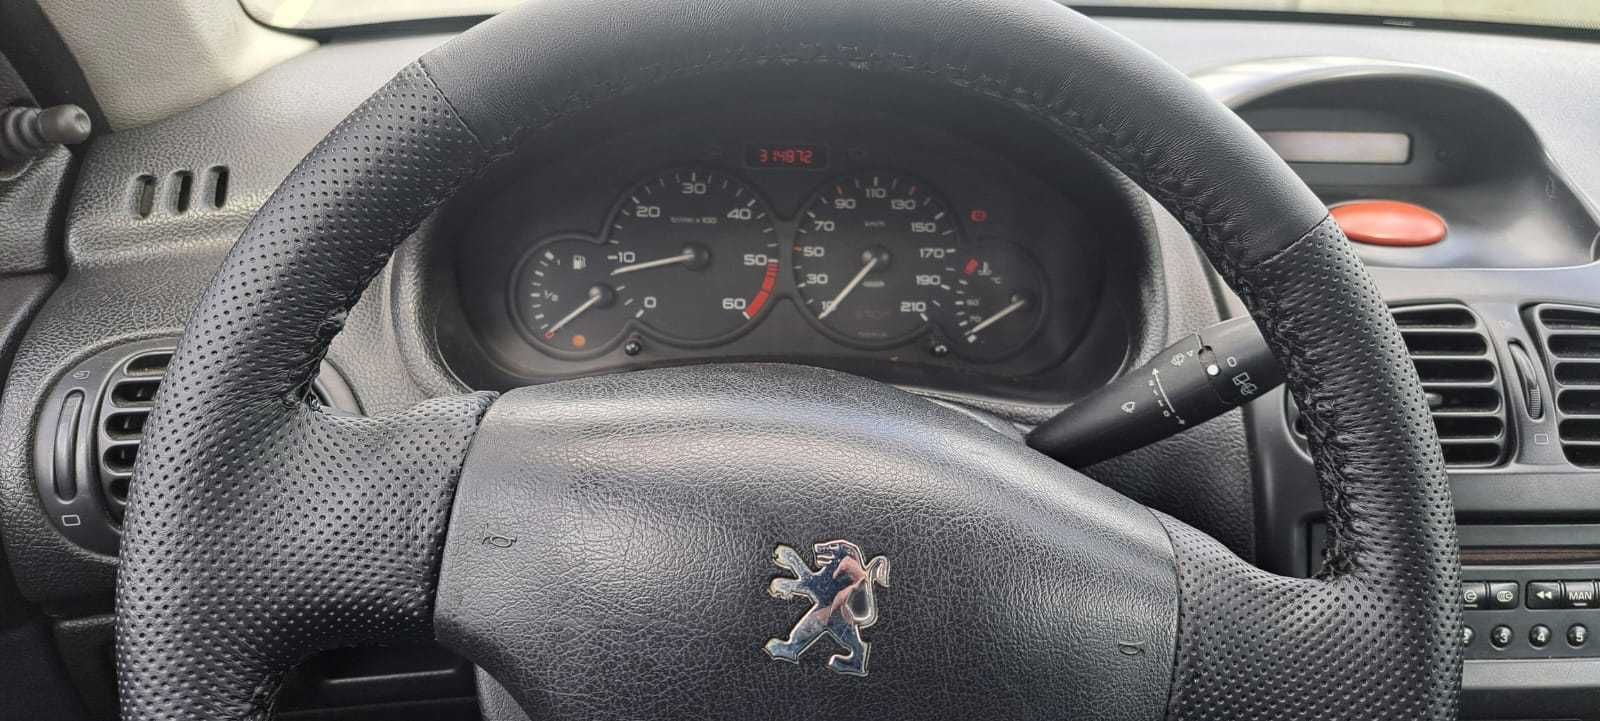 Peugeot 206 1.4 XA